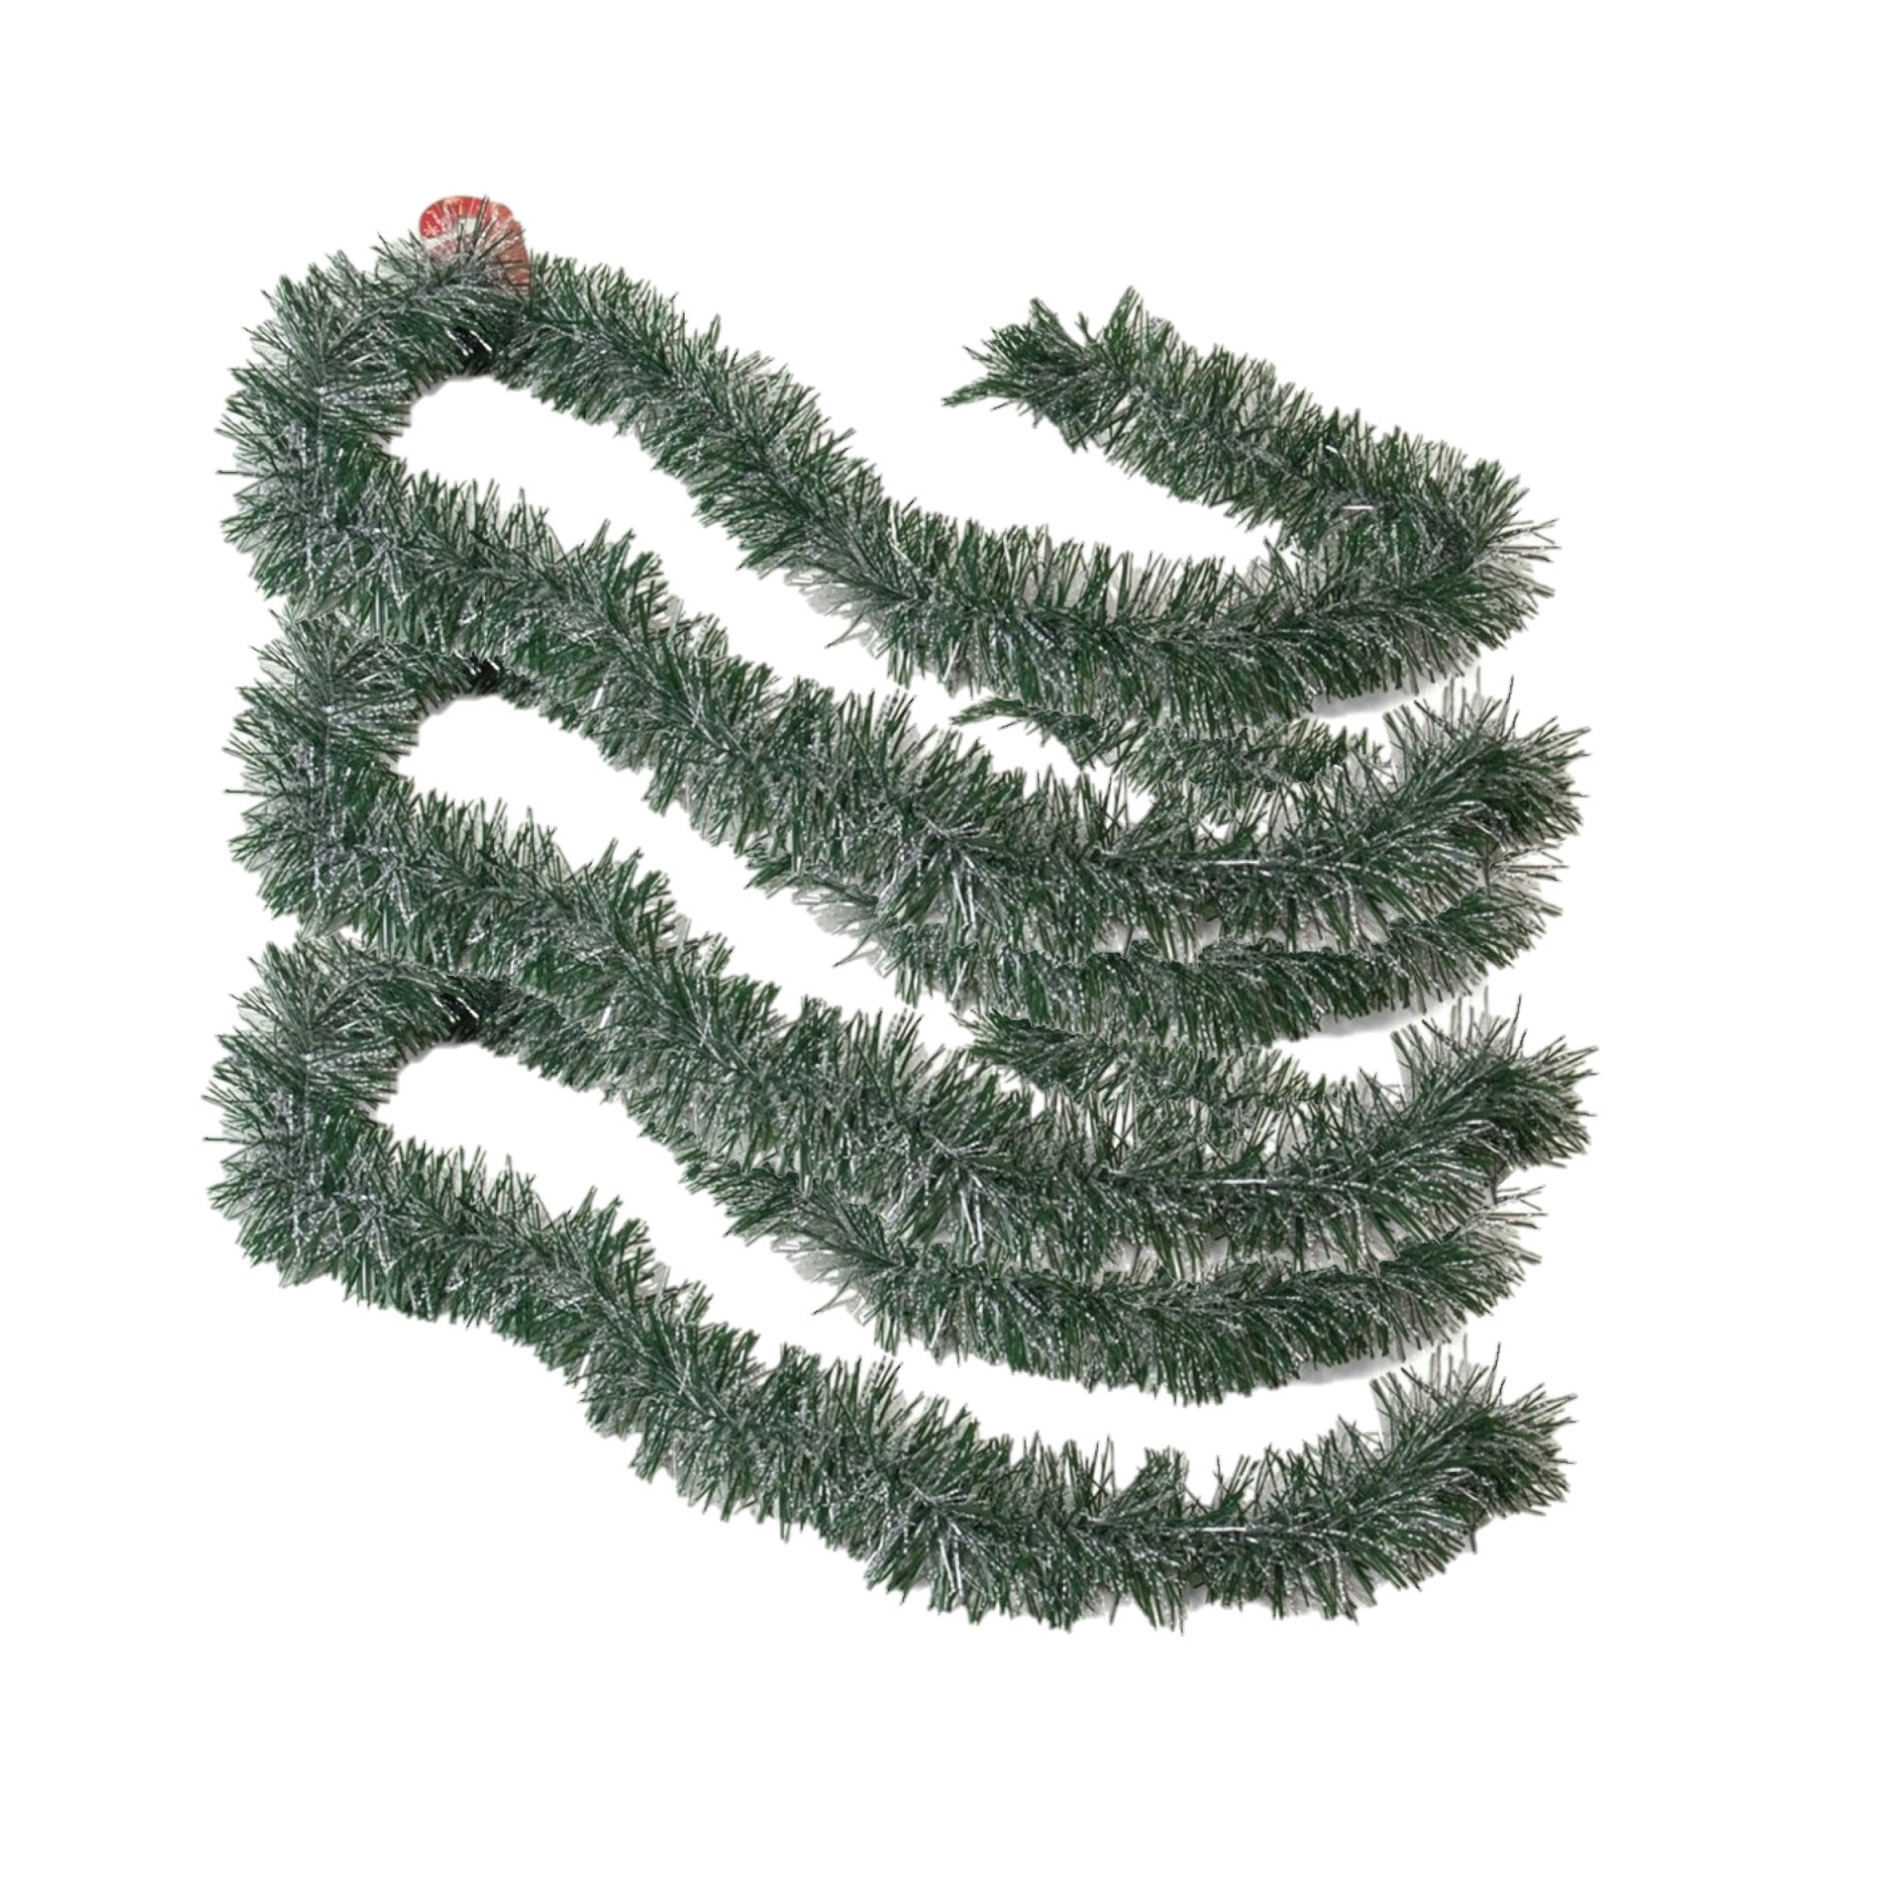 3x stuks kerstboom folie slingers-lametta guirlandes van 180 x 7 cm in de kleur groen met sneeuw